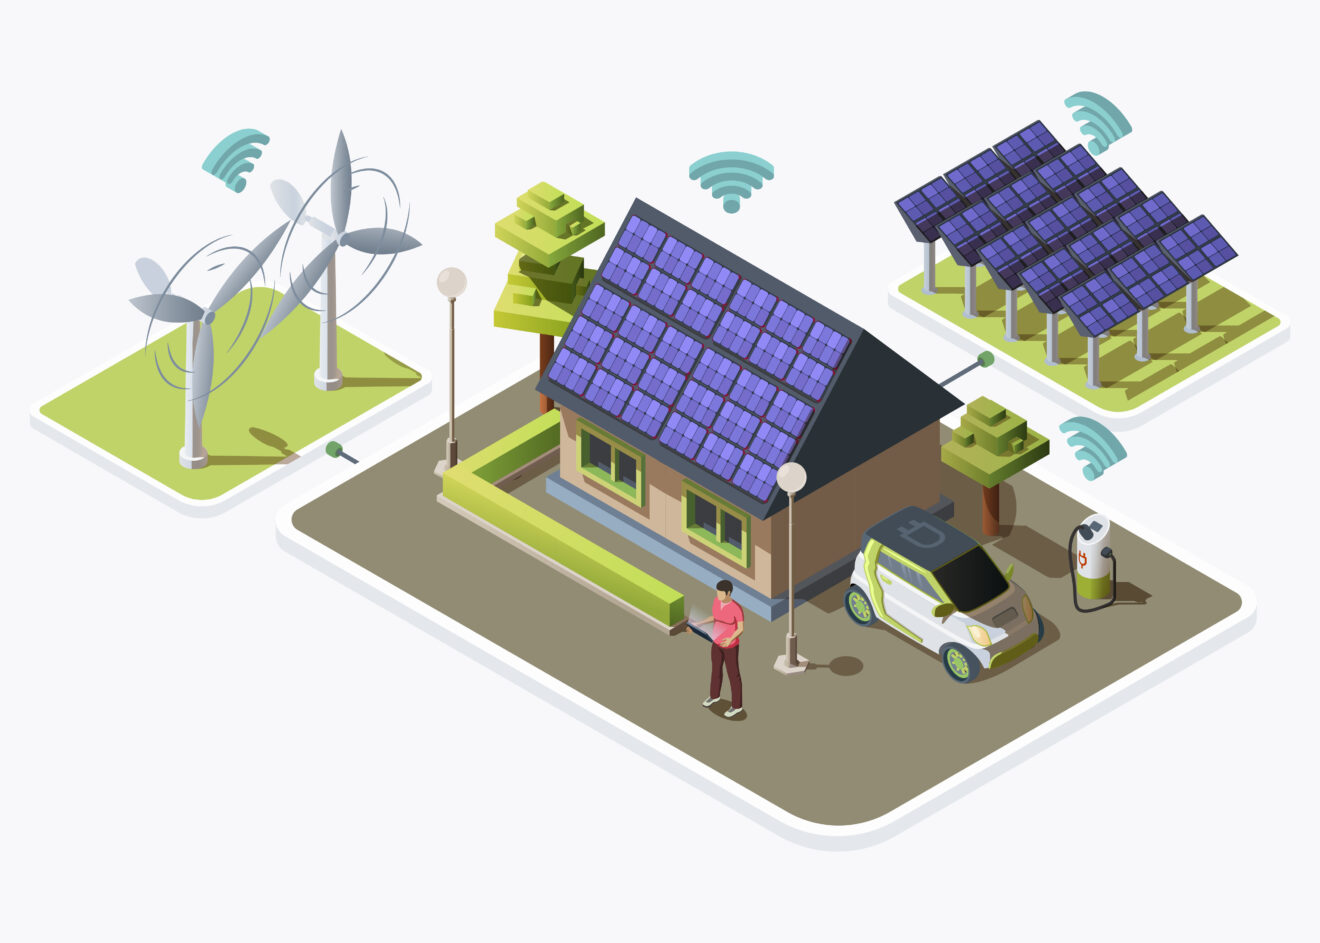 Smart grid concept illustration